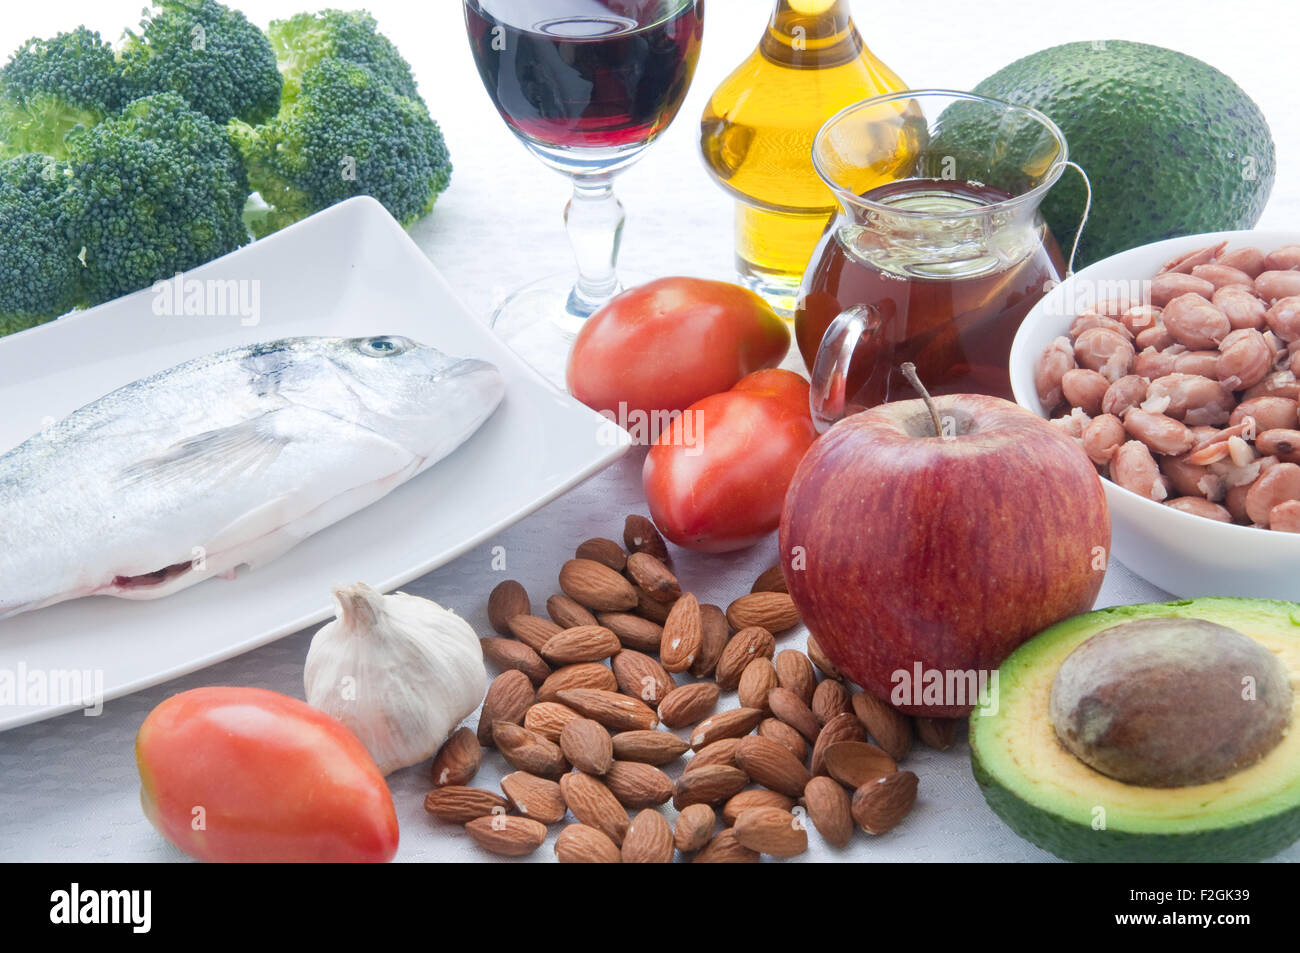 10 Lebensmittel, Cholesterin zu senken: Tee, Avocado, Obst, Gemüse, Nüssen,  Mandeln, Fisch, Wein Stockfotografie - Alamy